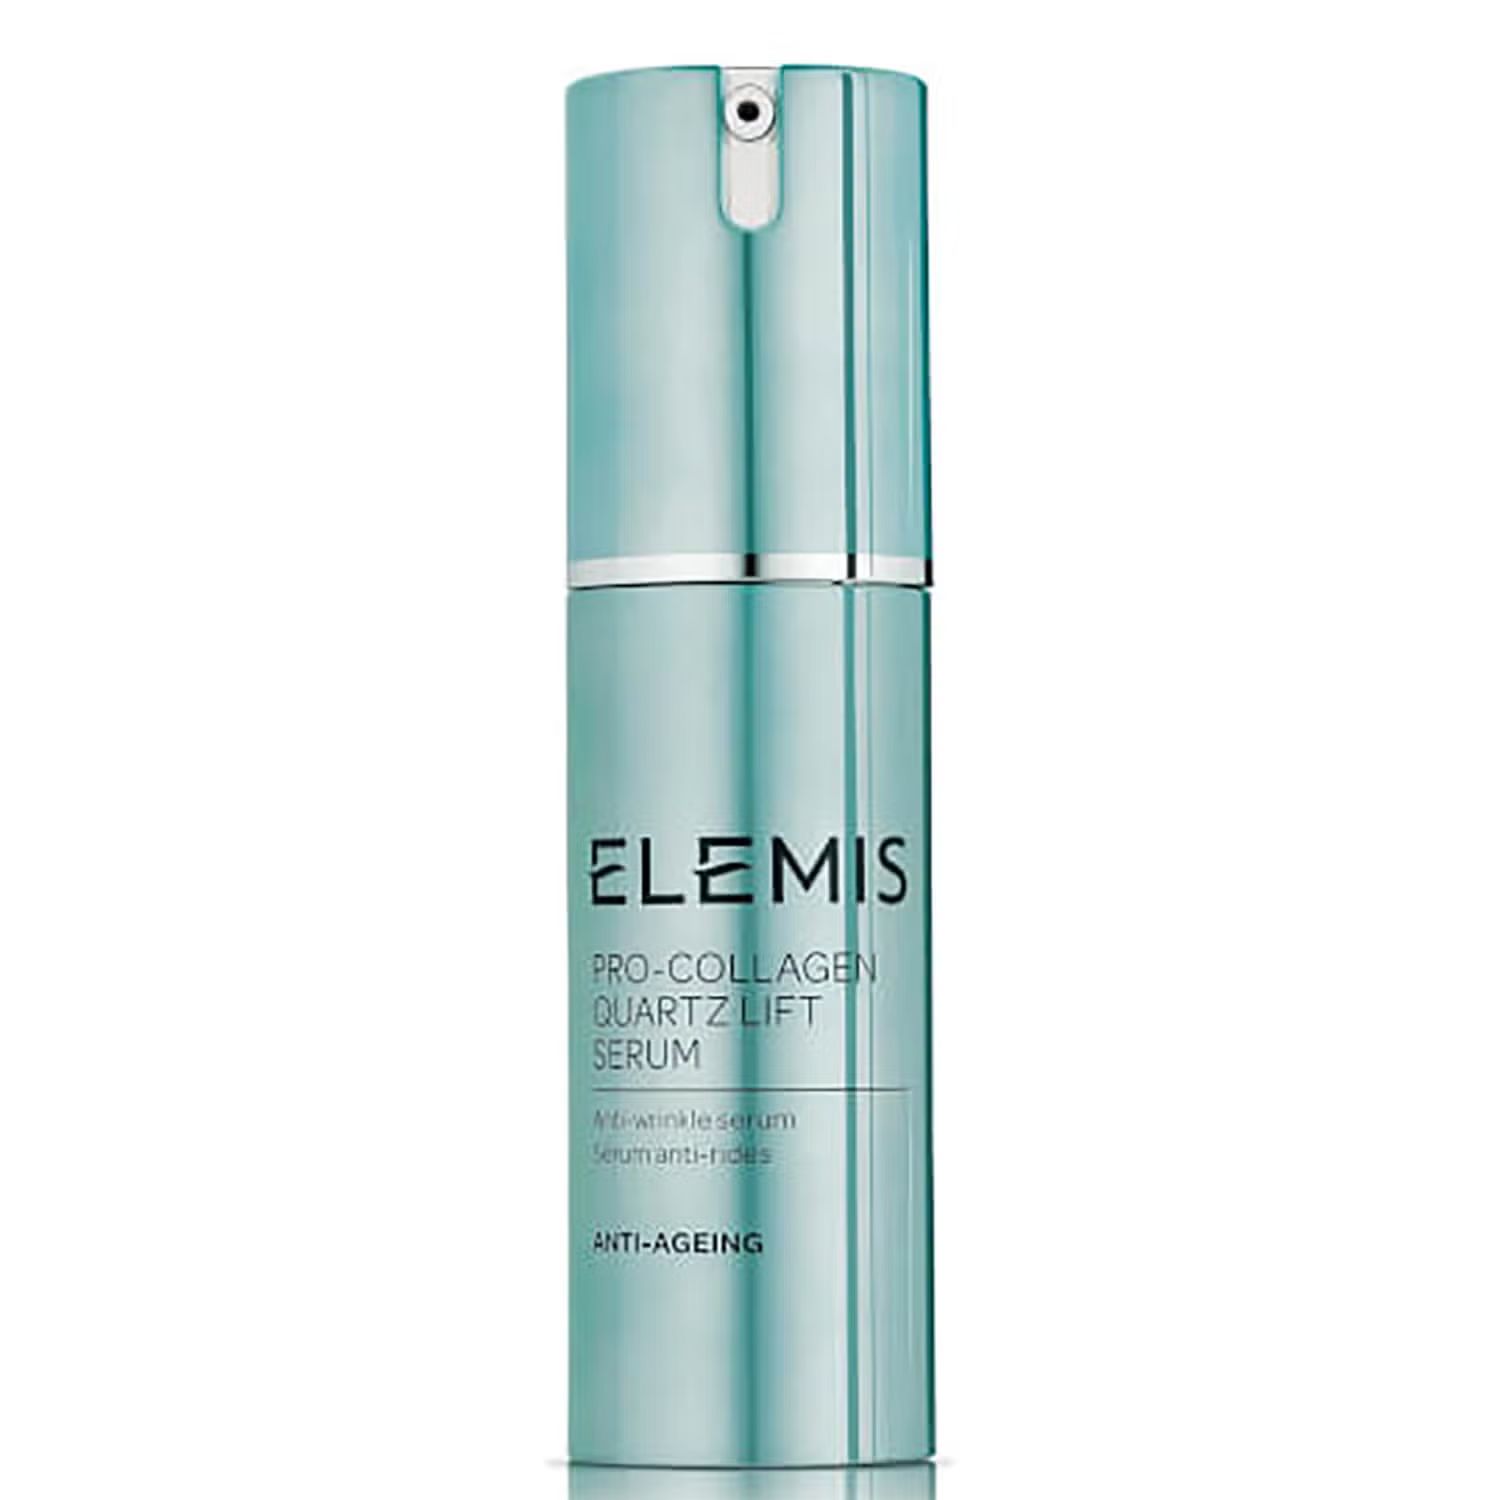 Elemis Pro Collagen Quartz Lift Serum - New (30ml) | Look Fantastic (UK)